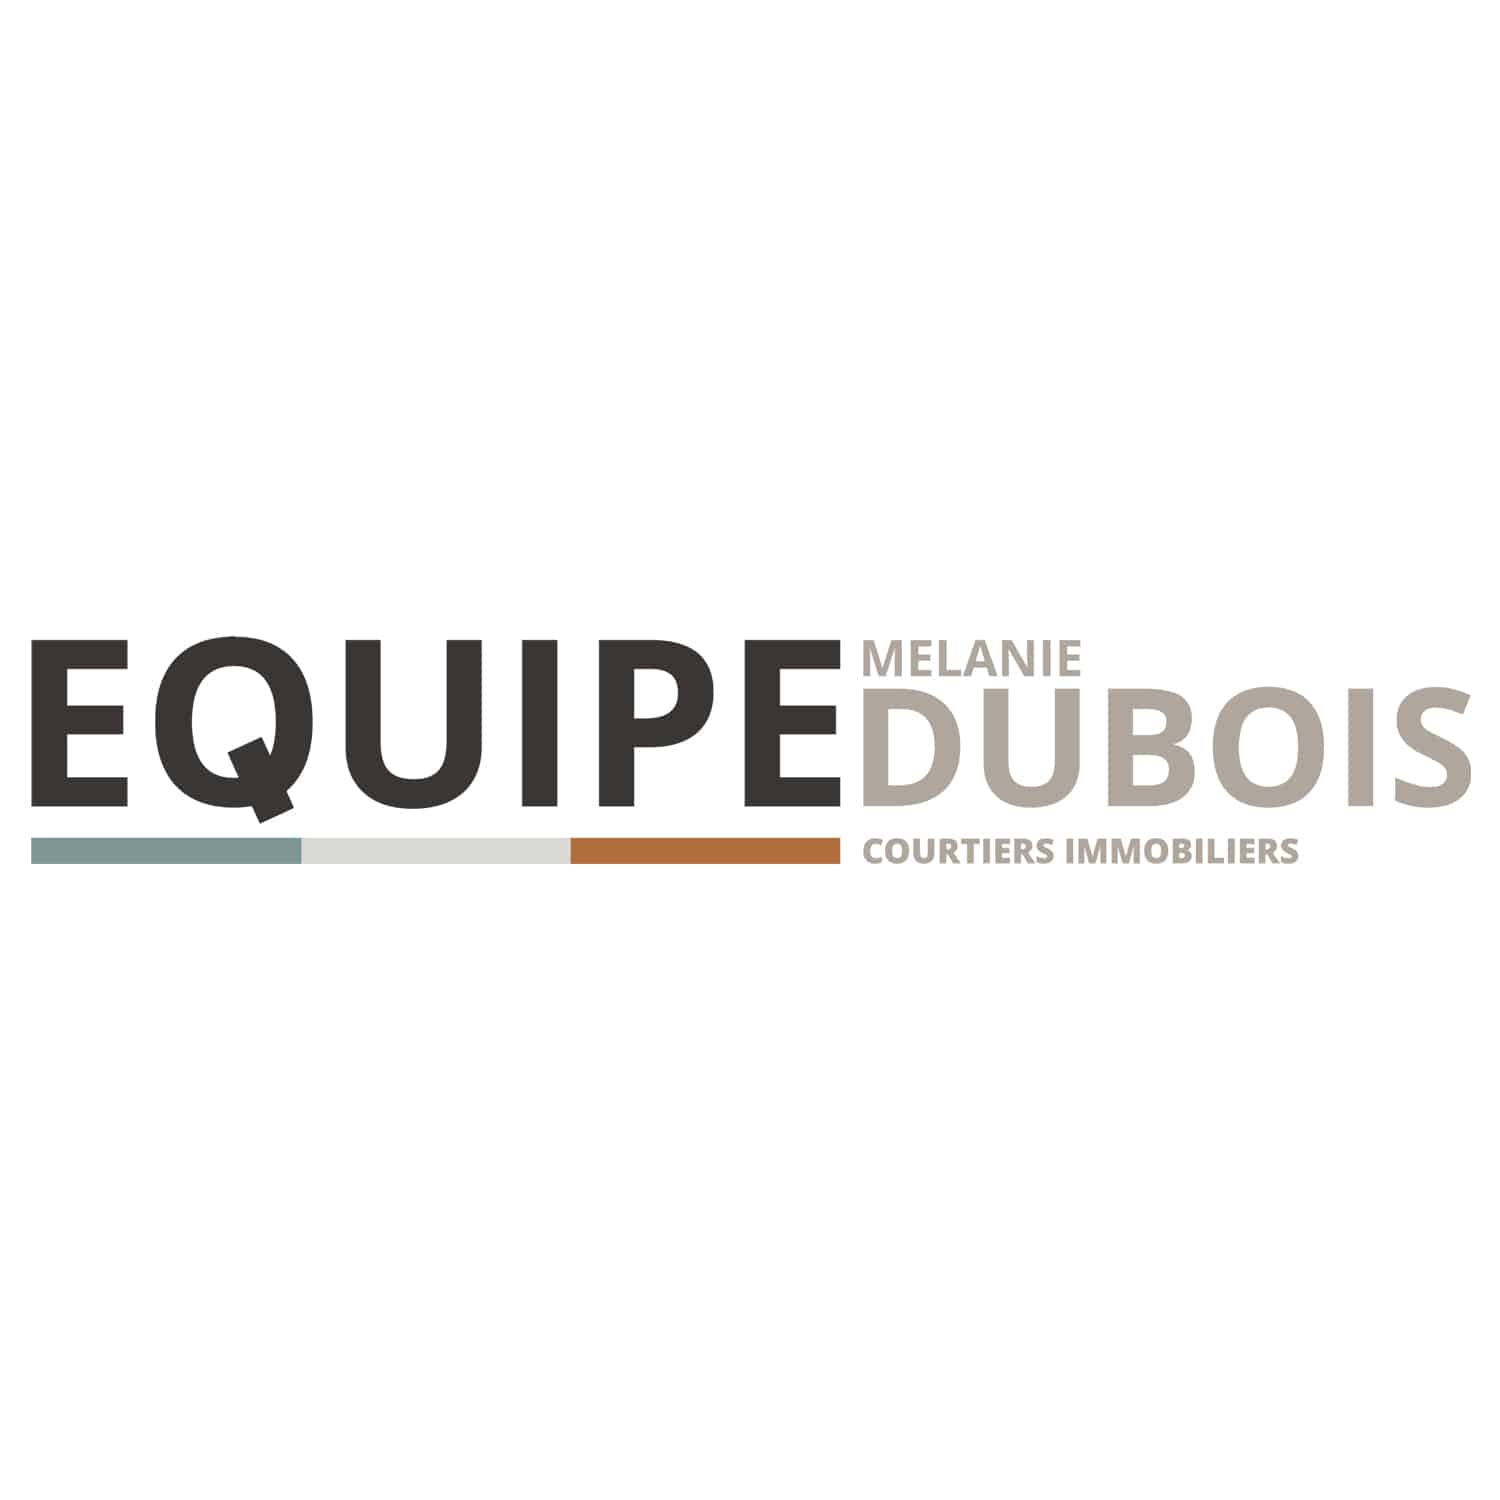 Équipe Mélanie Dubois Courtiers immobiliers